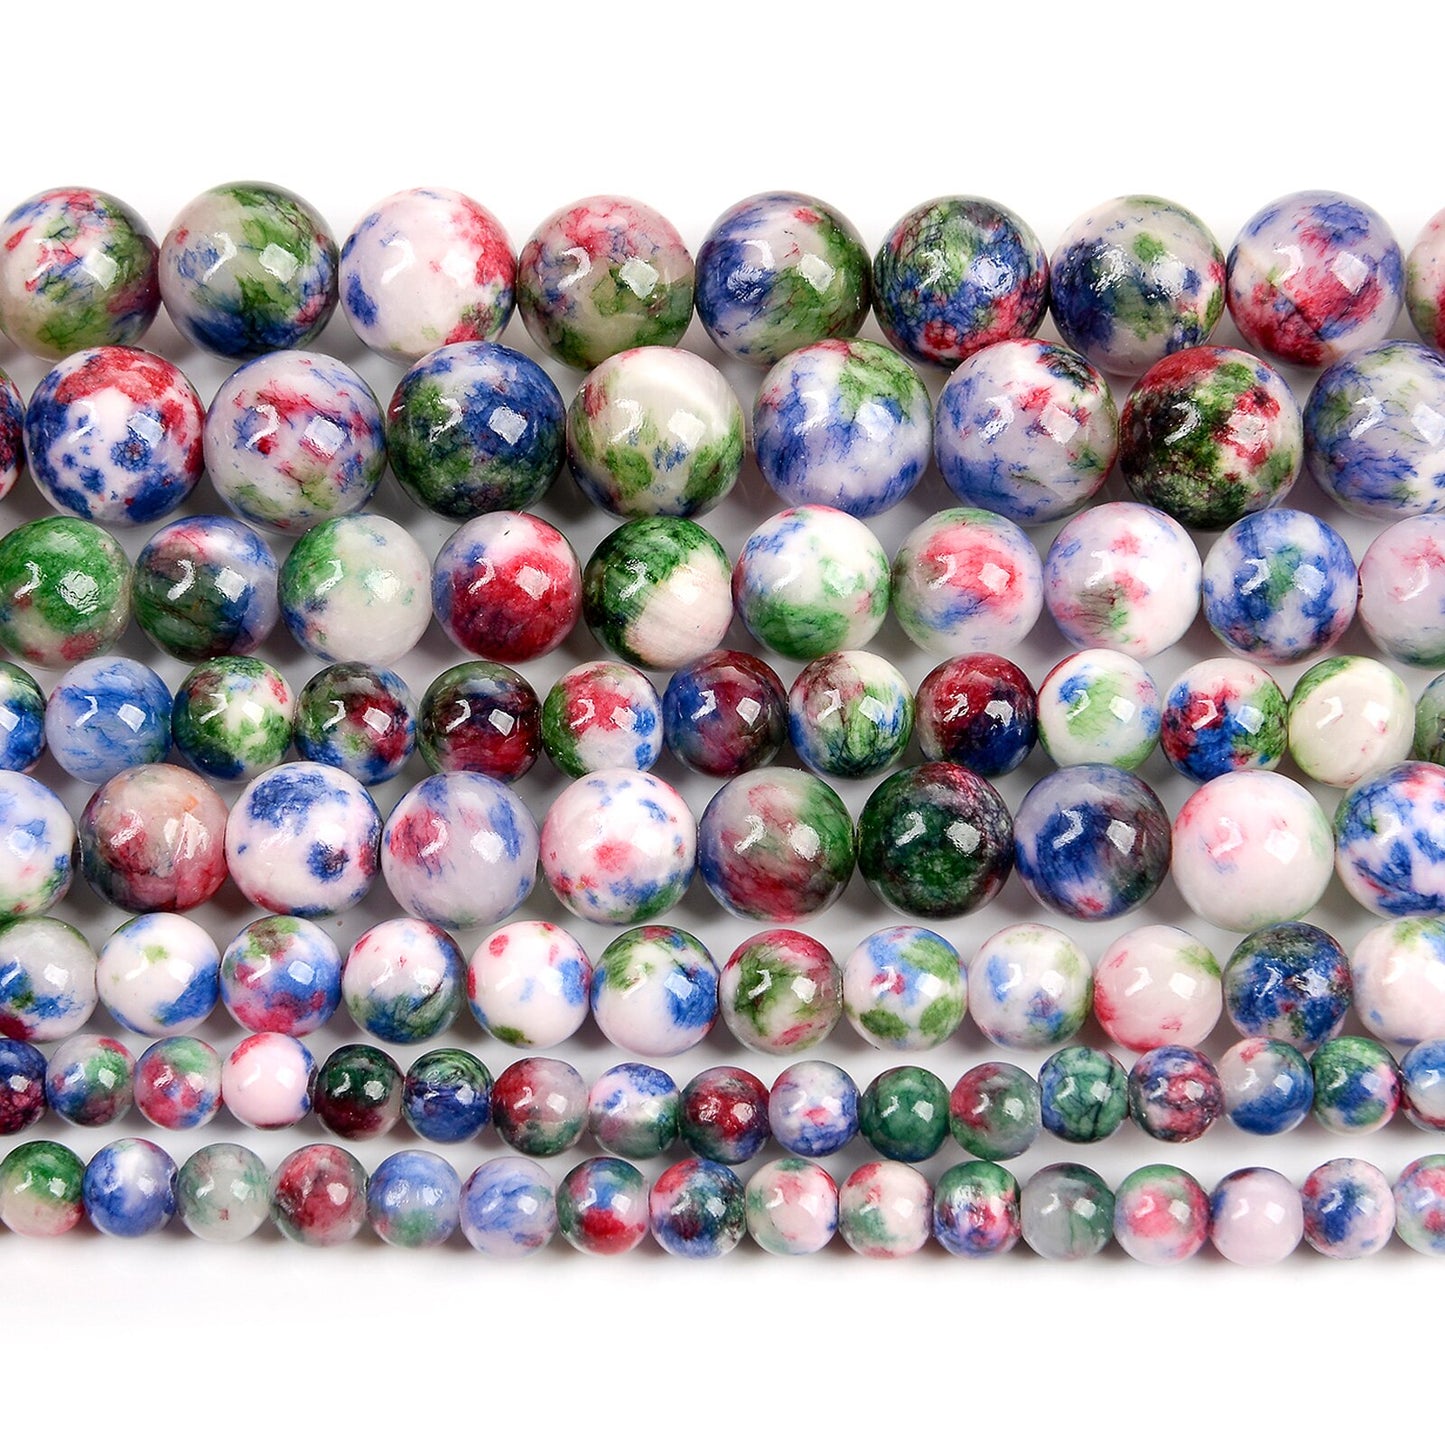 Purple Persian Jade Beads Round Loose Beads